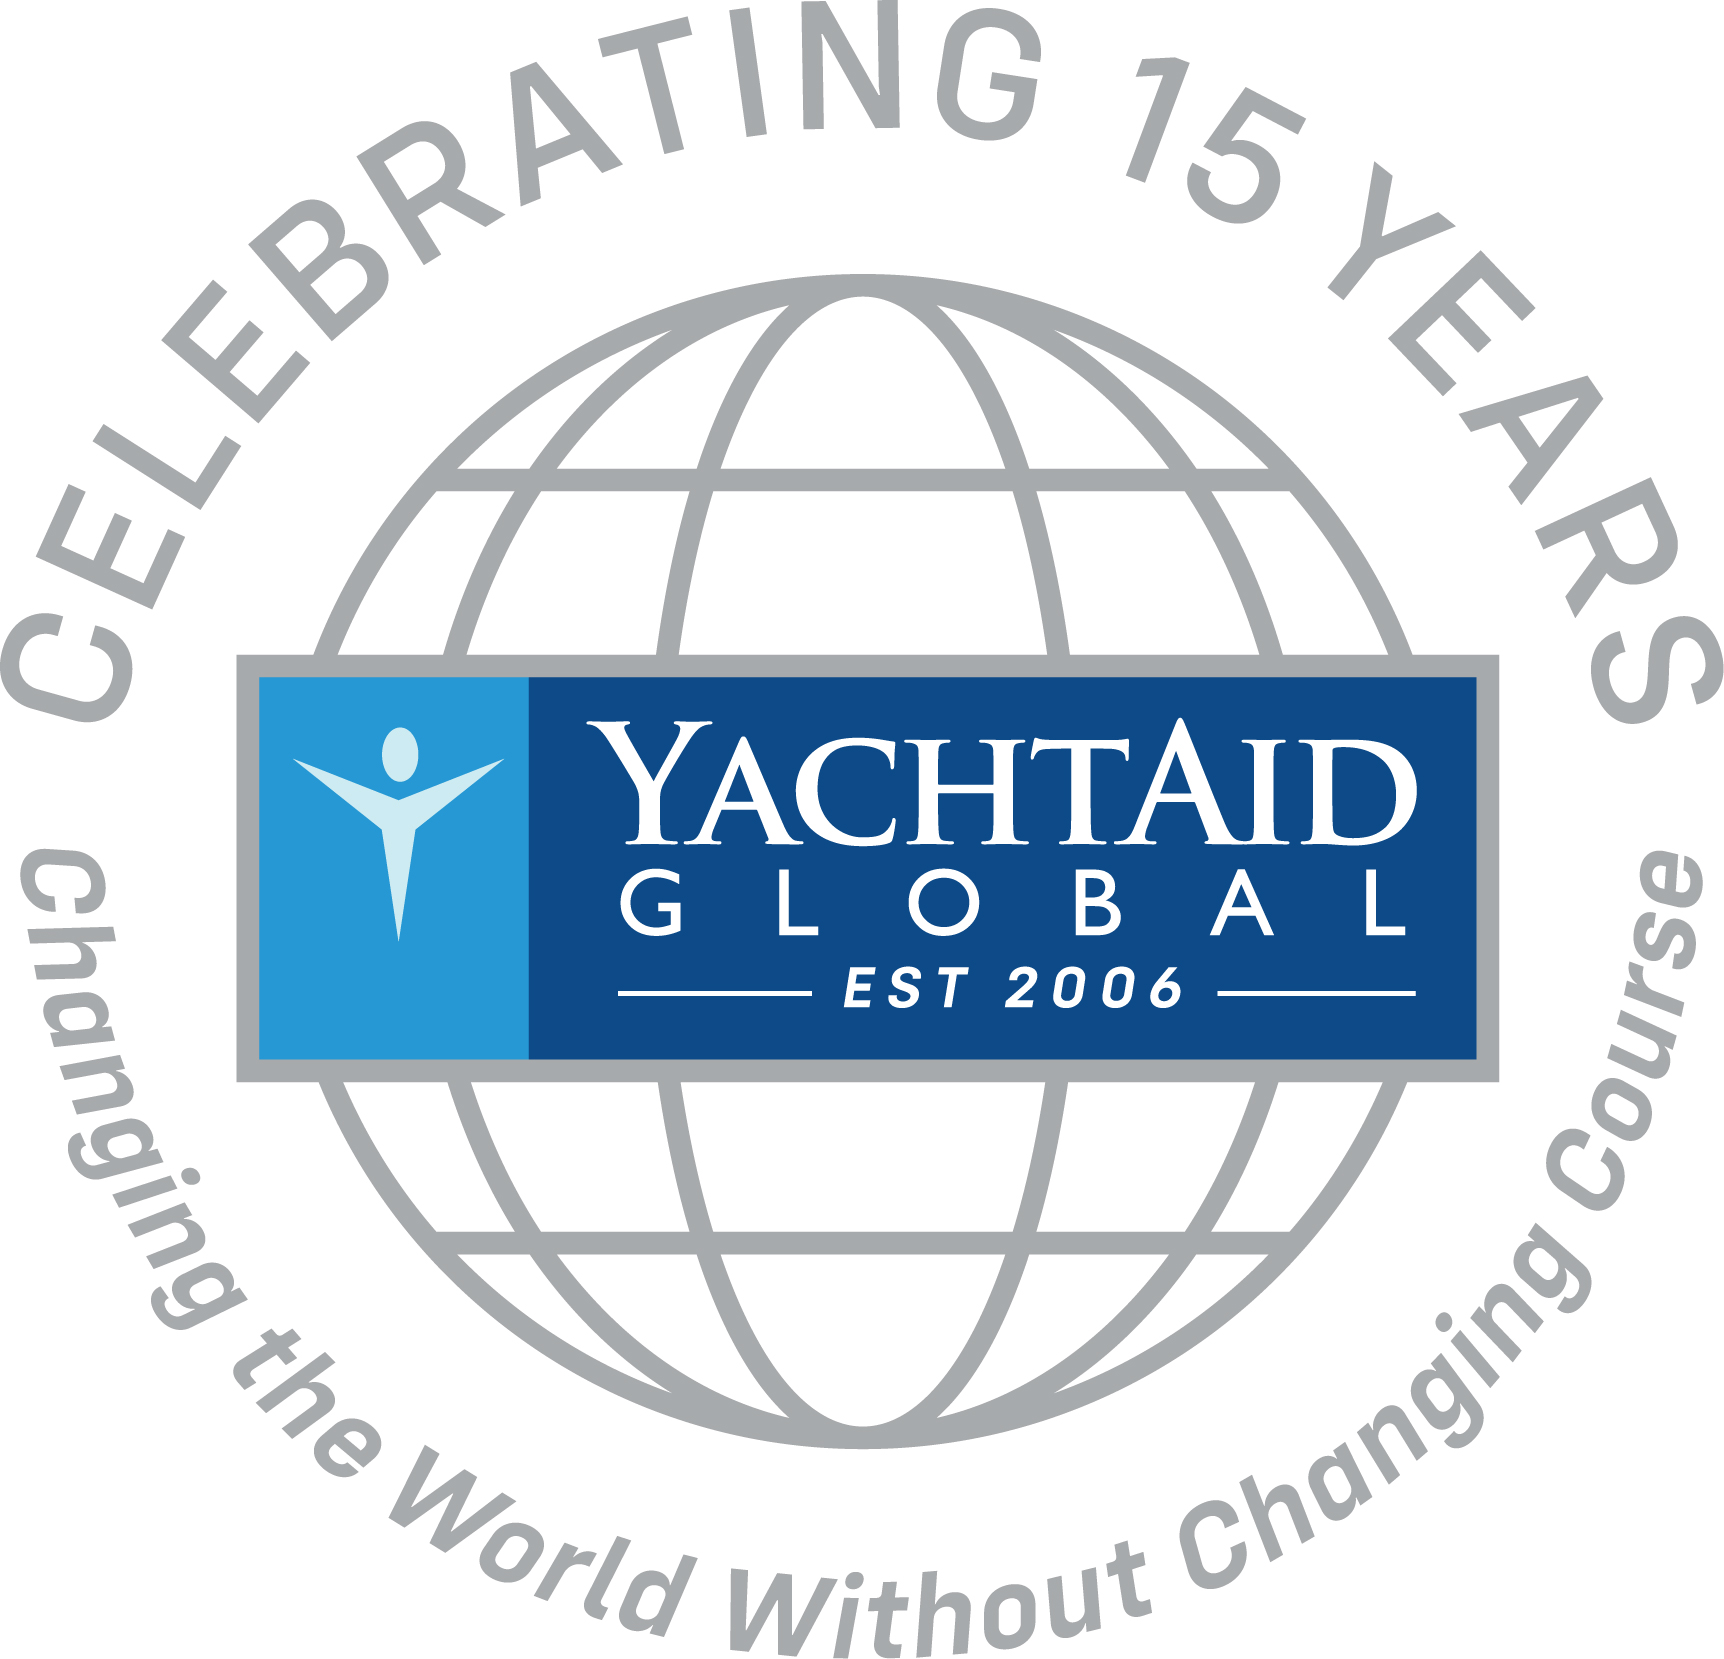 yachtaid global